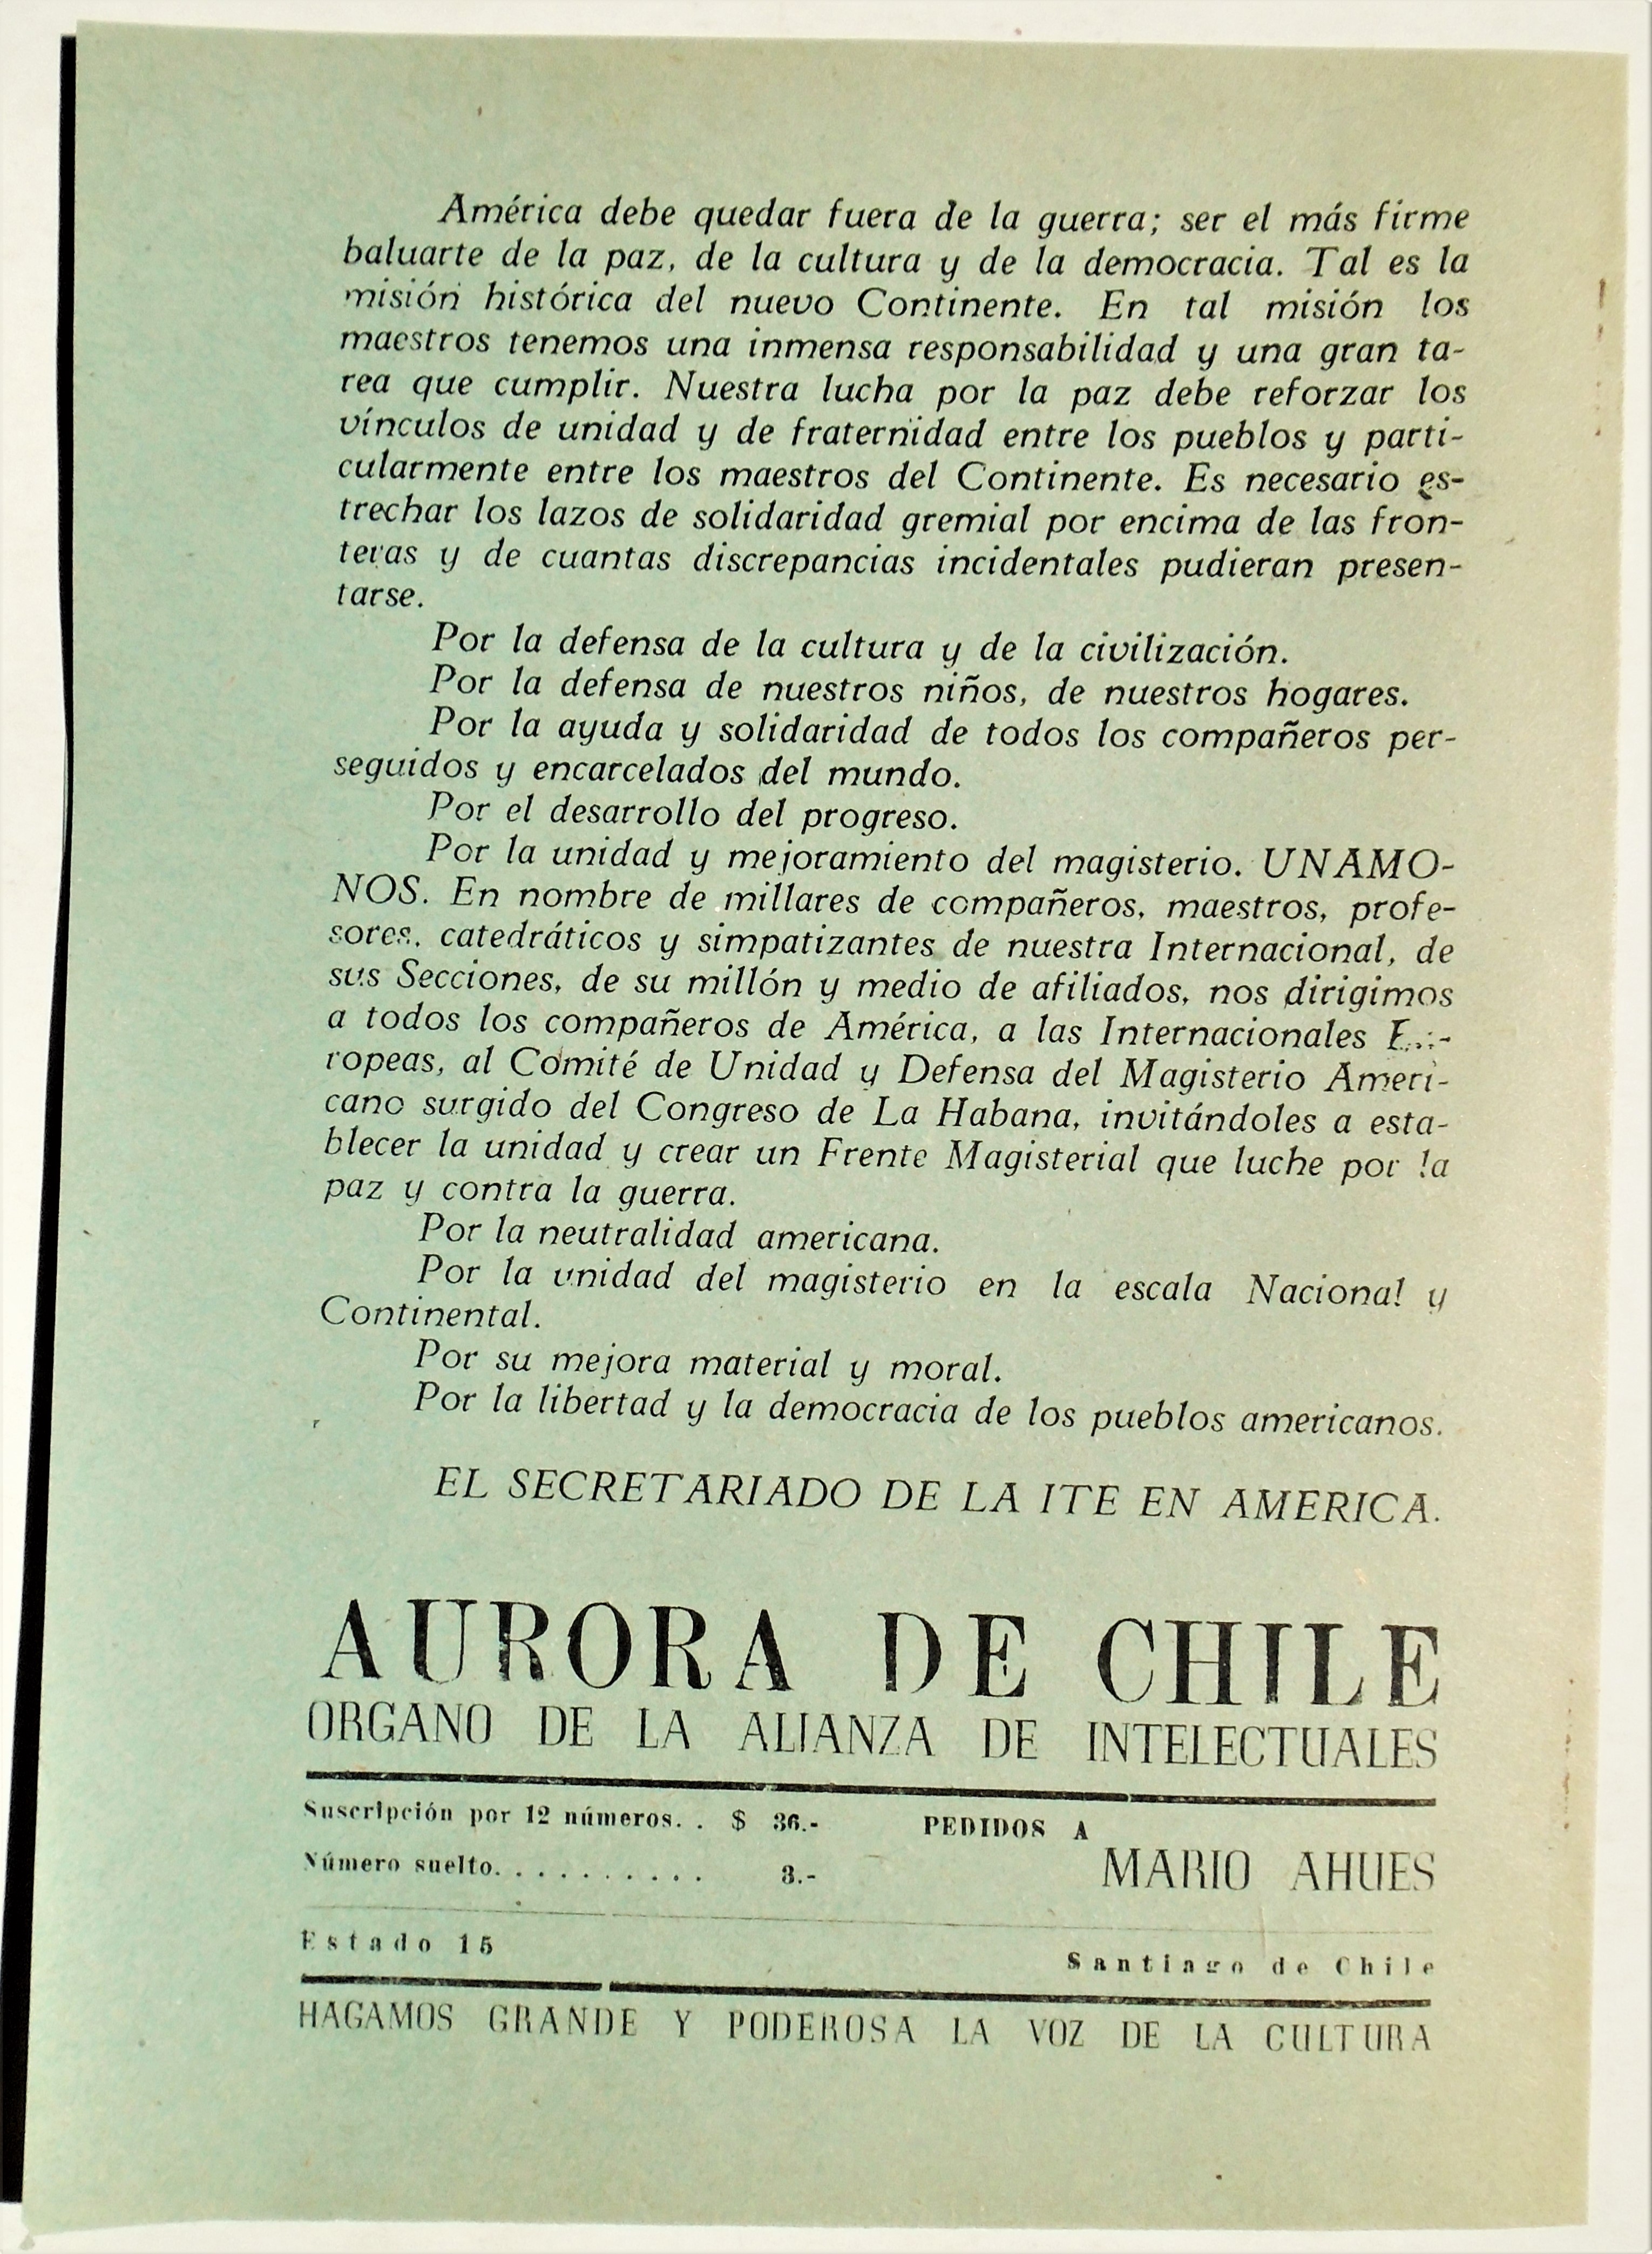 Alianza intelectuales para la defensa de la cultura - Aurora de Chile